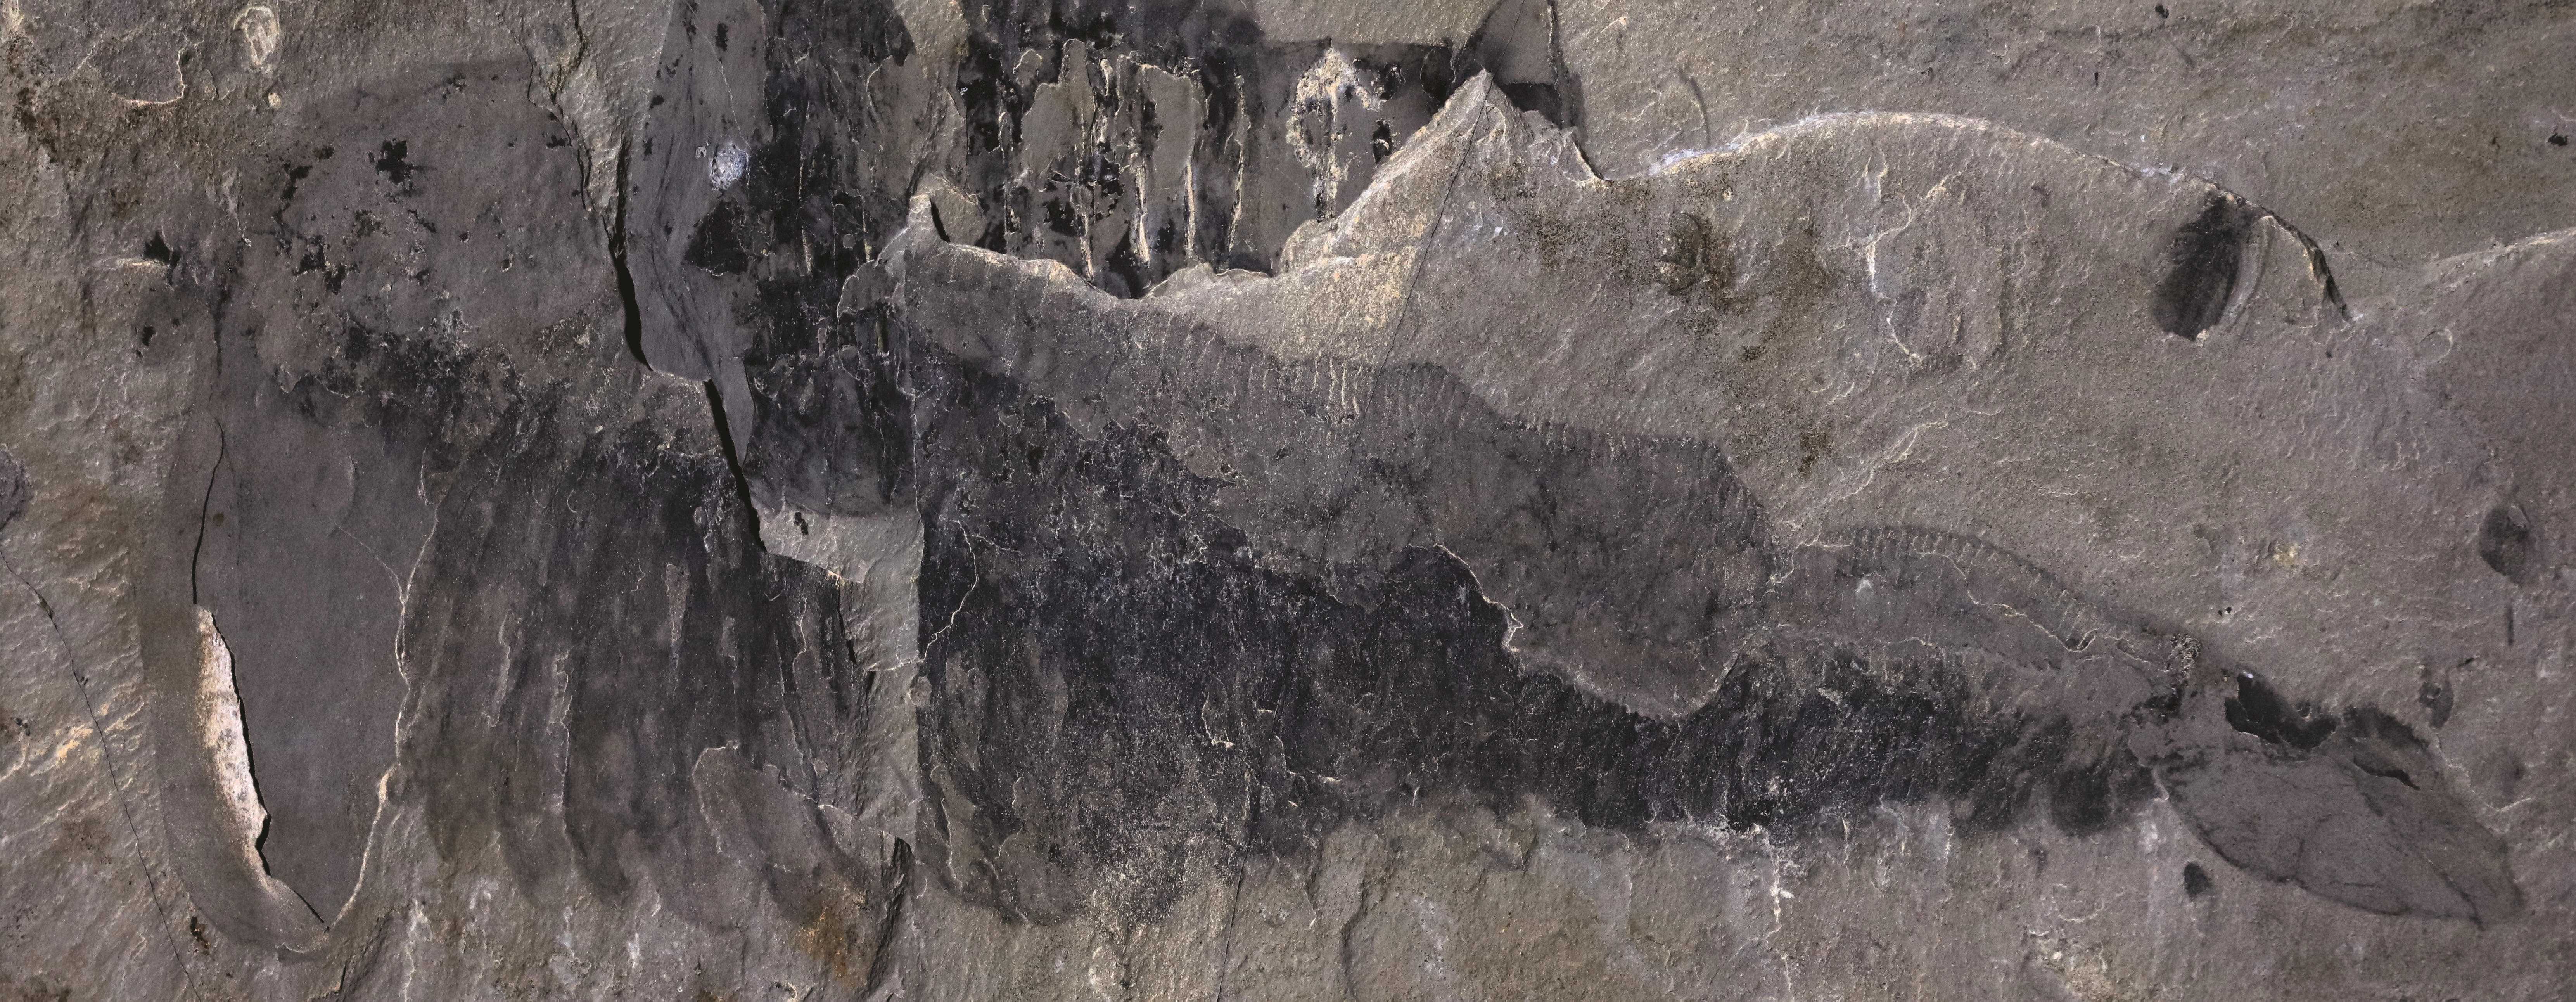 В Канаде нашли окаменелости кембрийского членистоногого с 220 конечностями